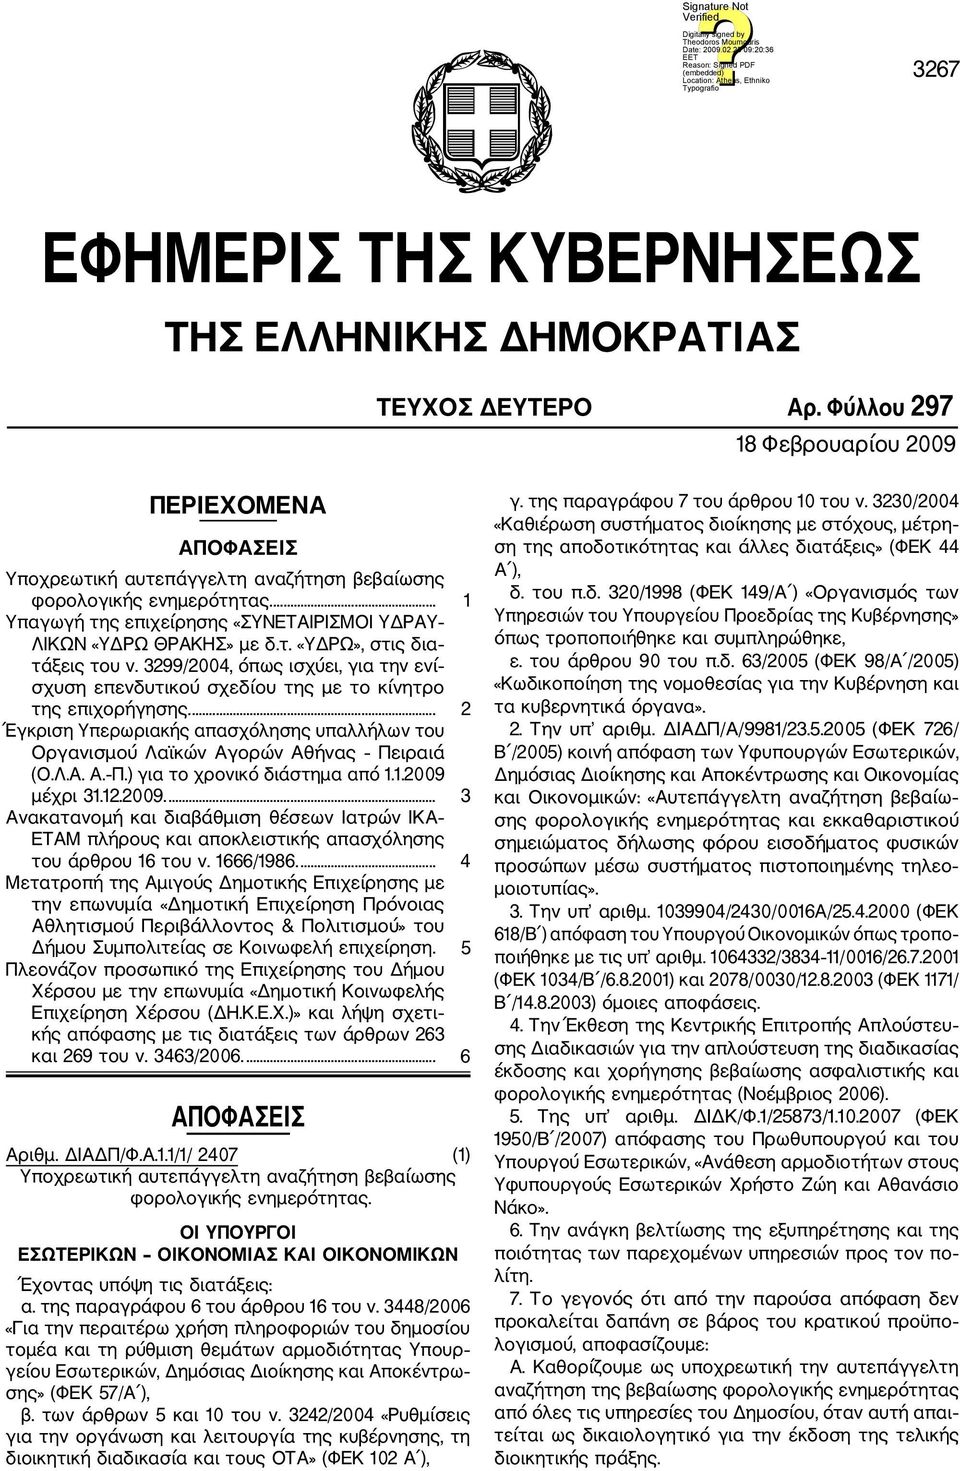 3299/2004, όπως ισχύει, για την ενί σχυση επενδυτικού σχεδίου της με το κίνητρο της επιχορήγησης.... 2 Έγκριση Υπερωριακής απασχόλησης υπαλλήλων του Οργανισμού Λαϊκών Αγορών Αθήνας Πε